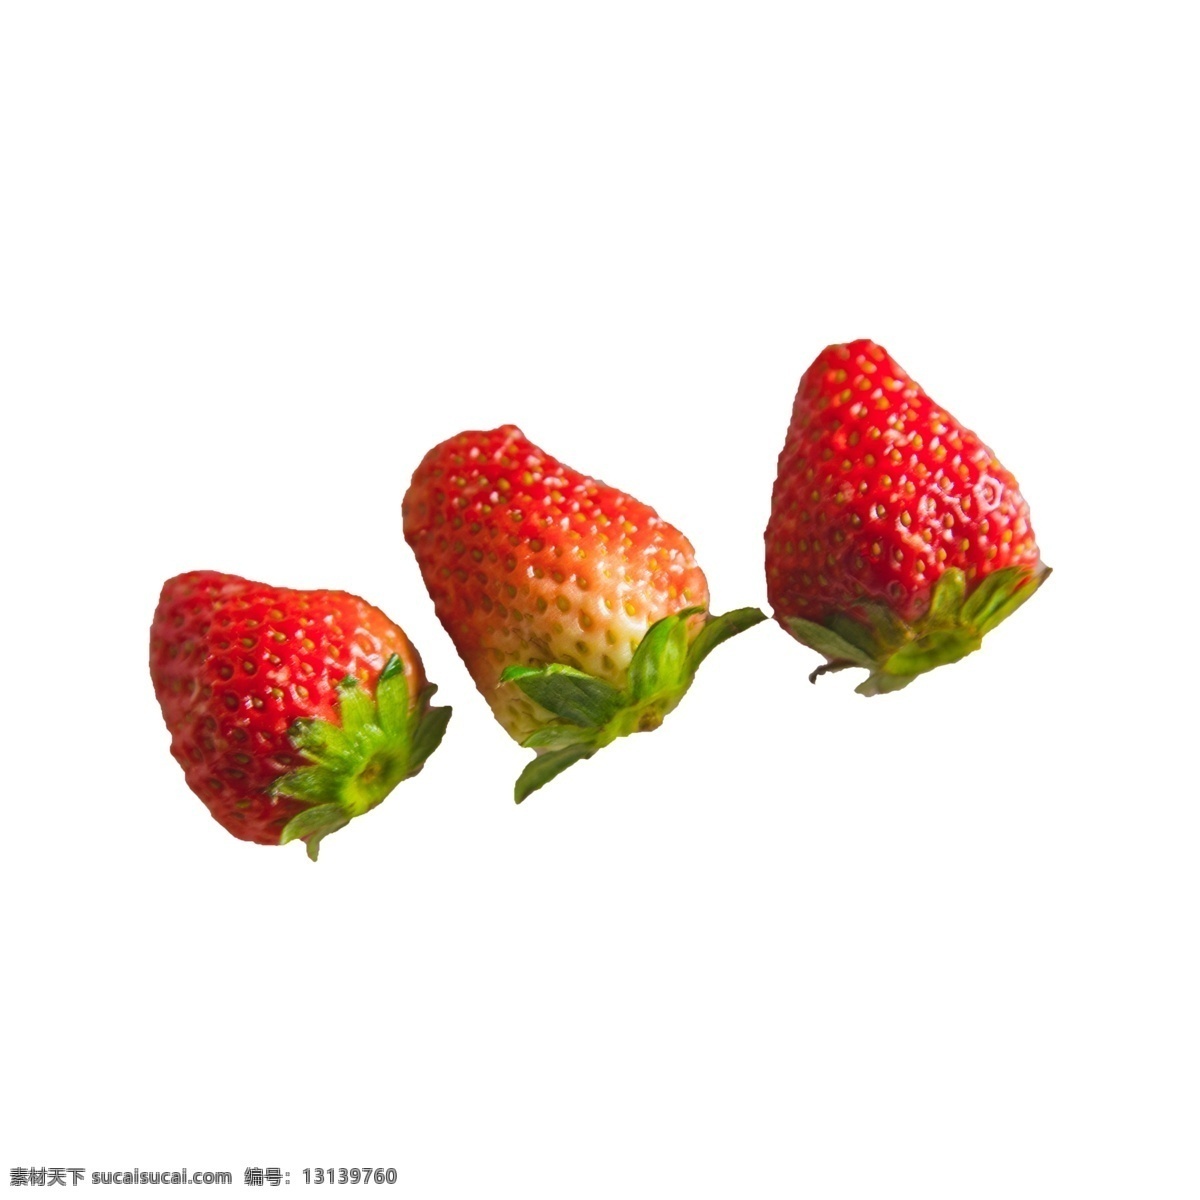 三 颗 草莓 实拍 免 抠 三颗草莓 水果 奶油草莓 绿叶 新鲜 食物 实物拍摄 摆拍 红颜大草莓 美味